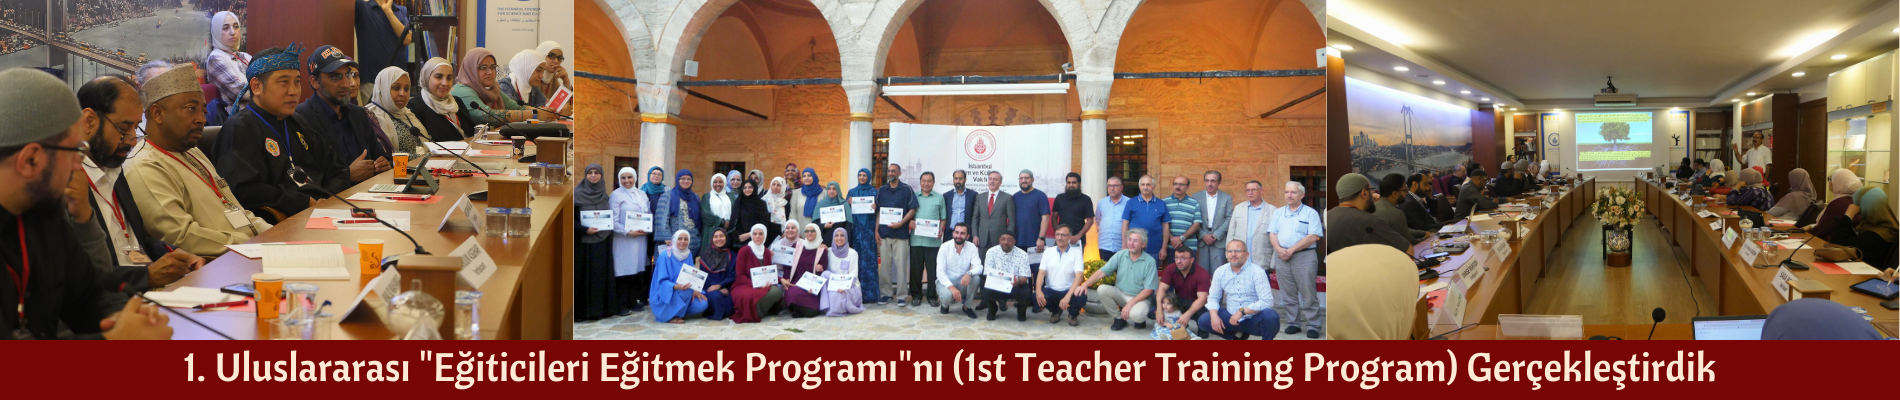 1. Uluslararası Eğiticileri Eğitmek Programını  (1st Teacher Training Program) Gerçekleştirdik